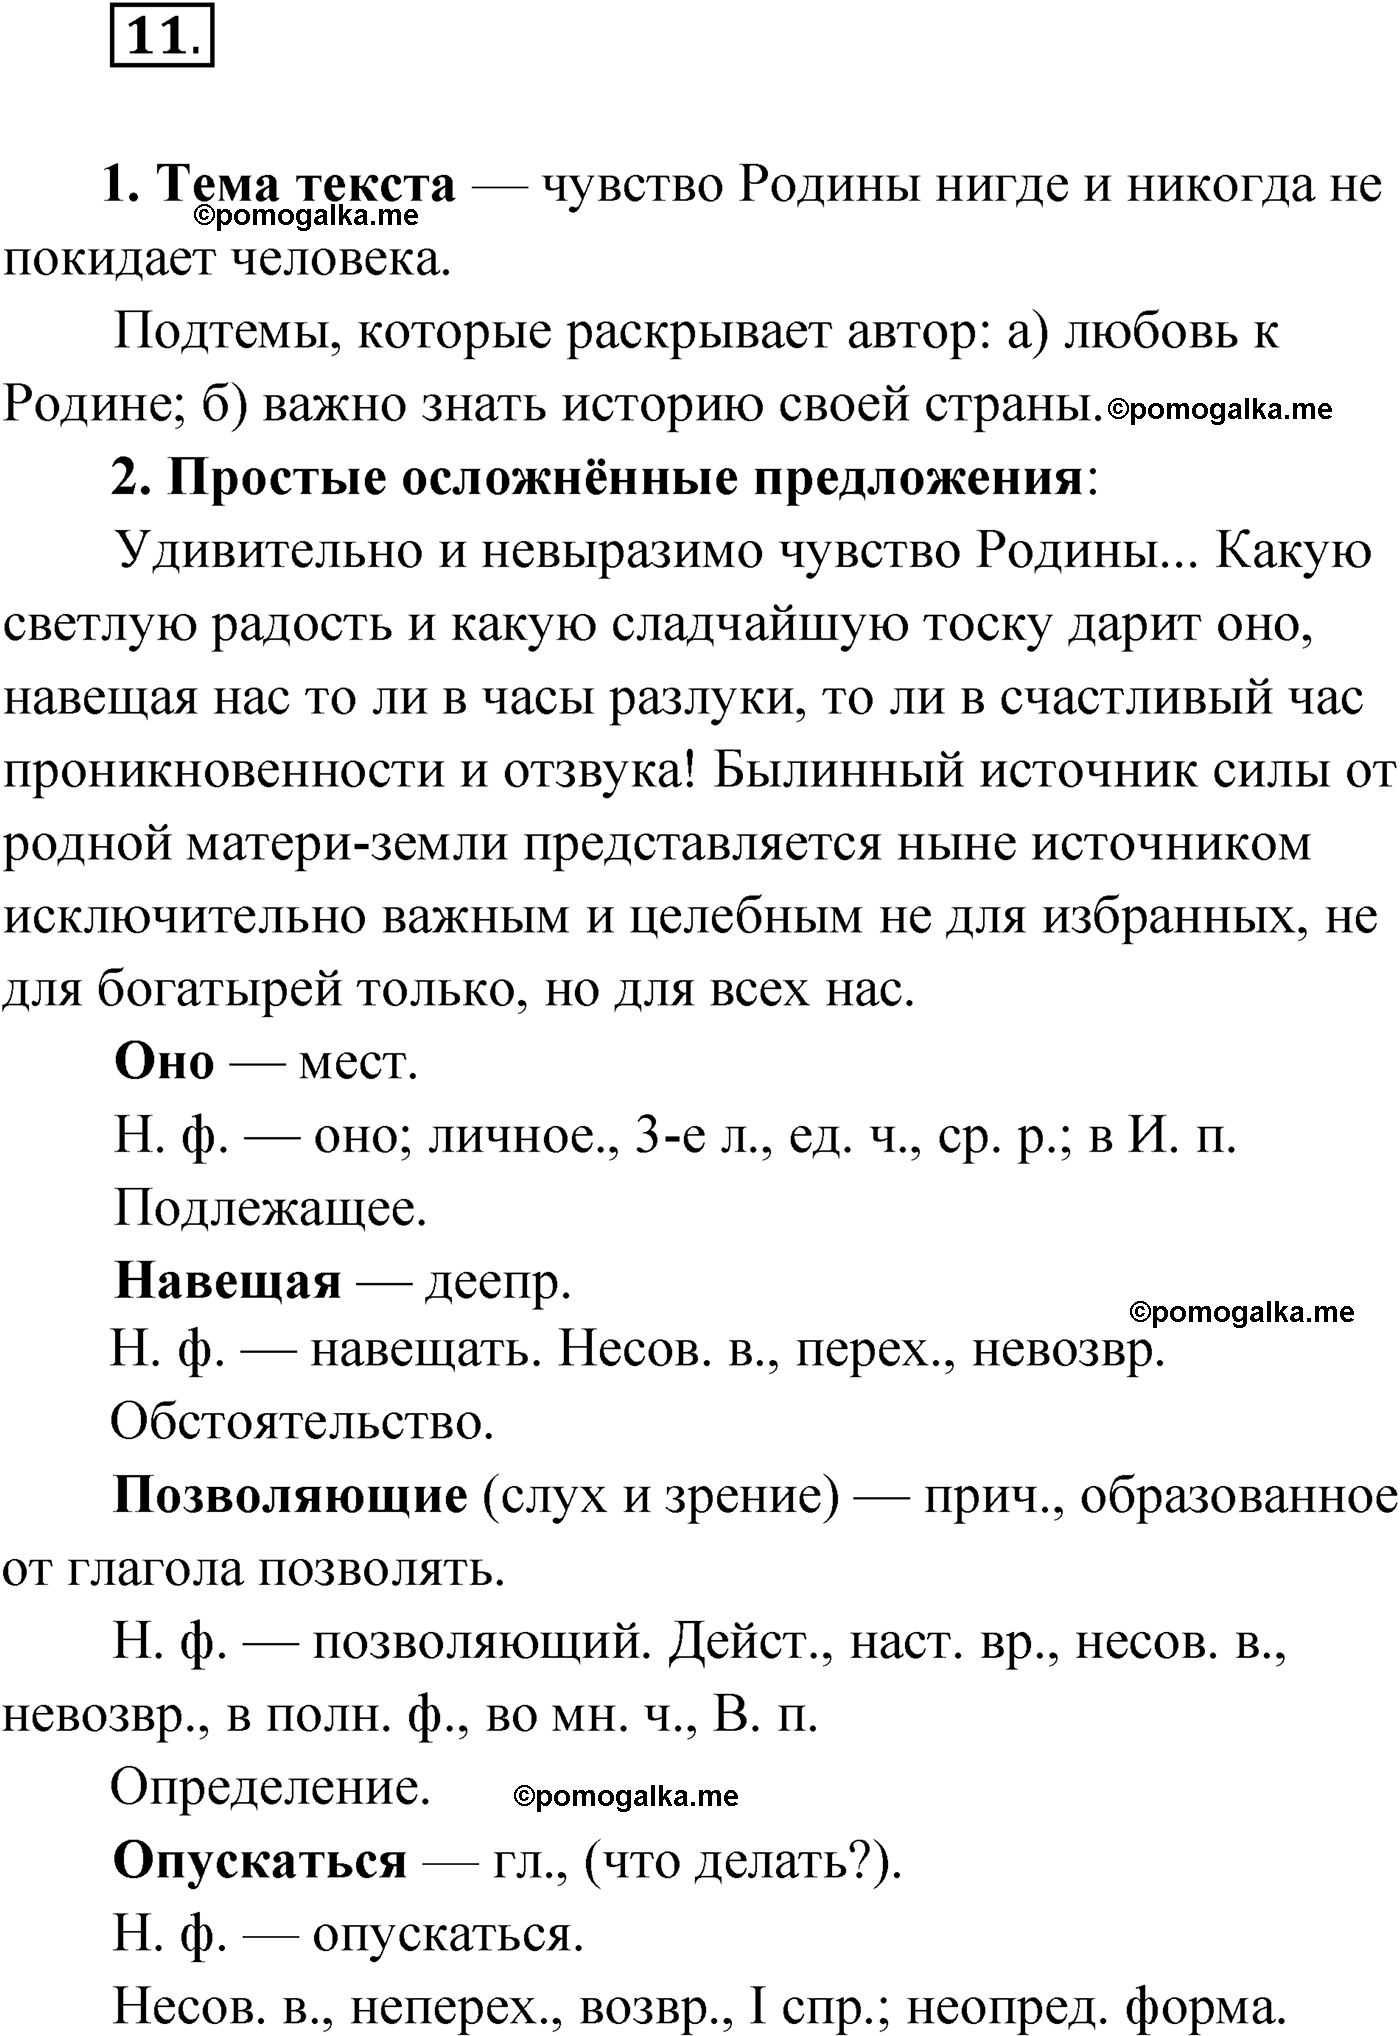 упражнение №11 русский язык 9 класс Мурина 2019 год